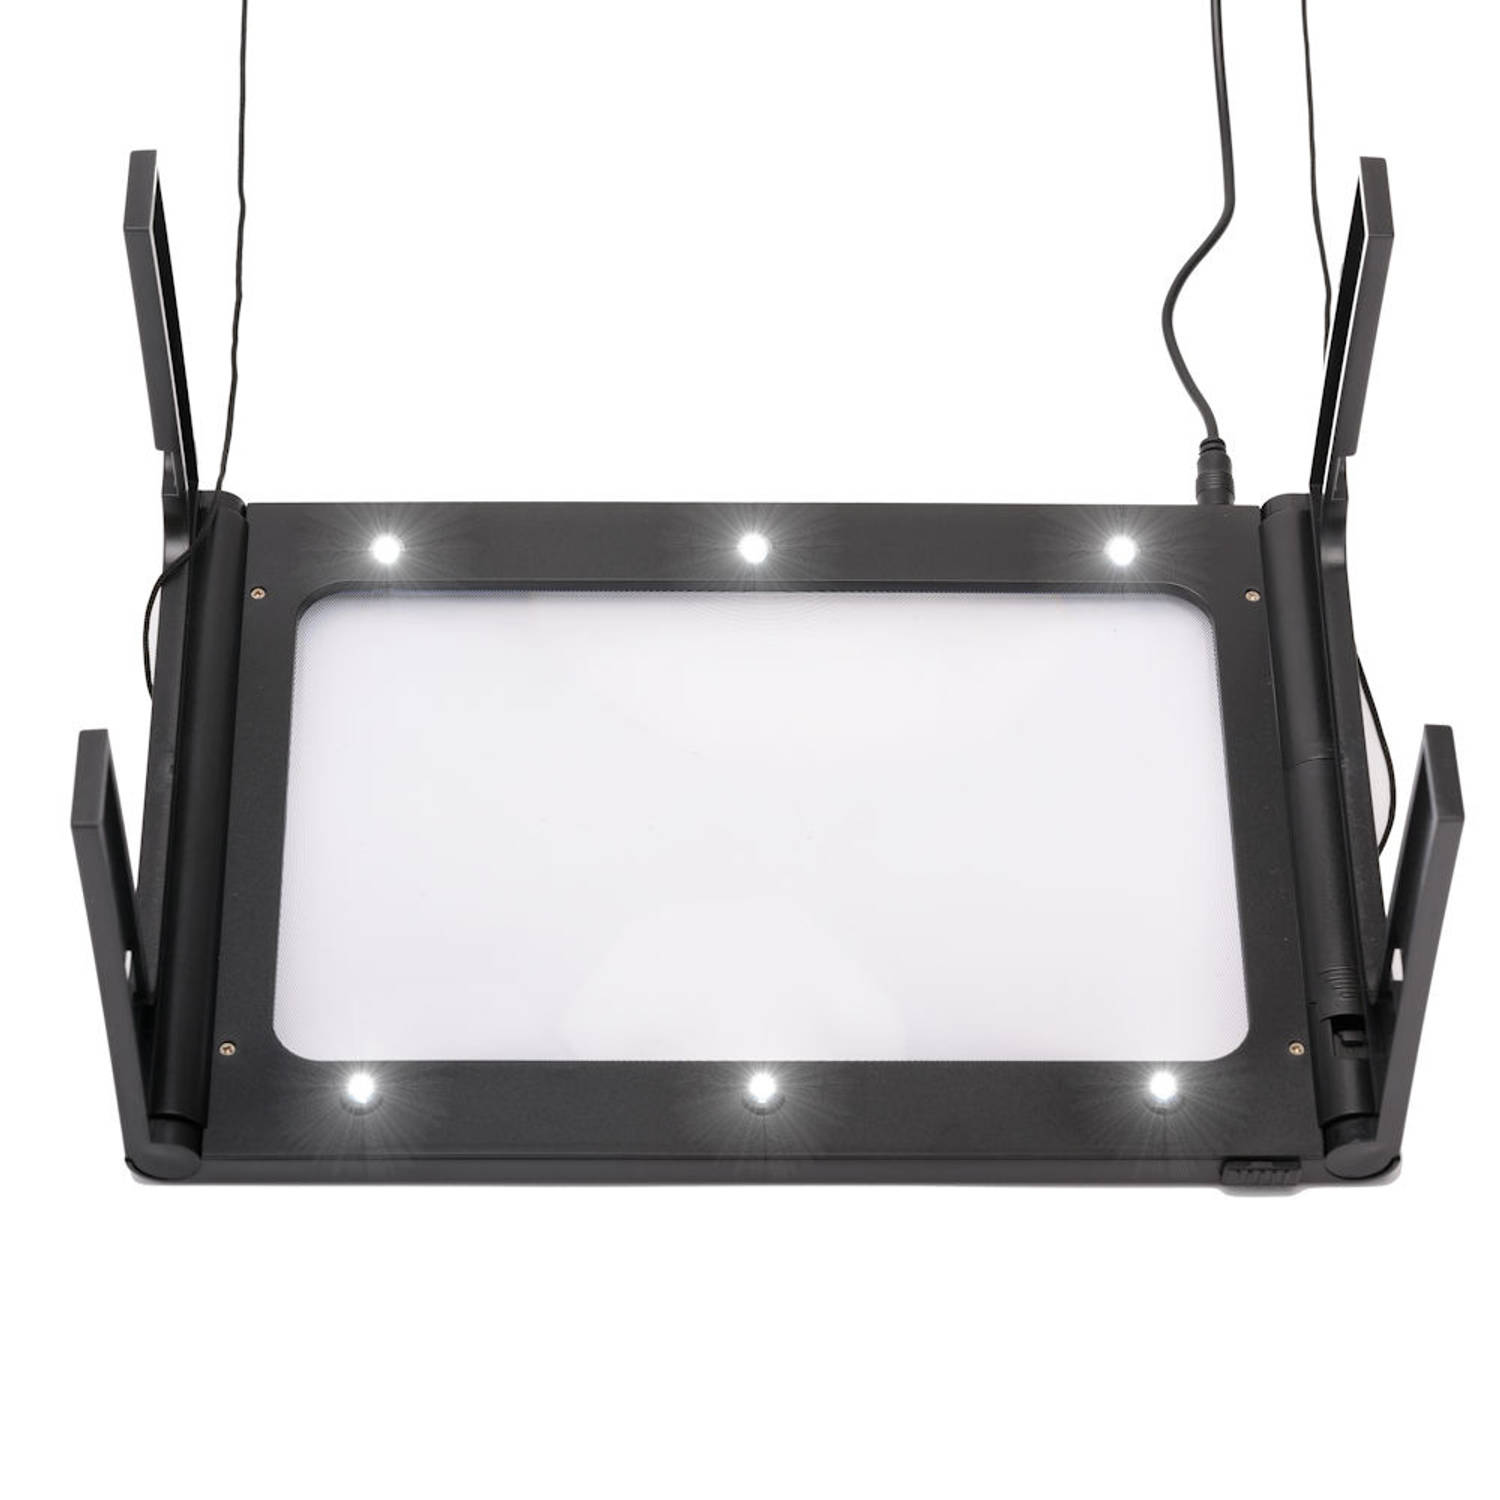 Wasserette fusie transmissie Tafel Loep - Vergrootglas met LED verlichting - Loep 2.5x - | Blokker